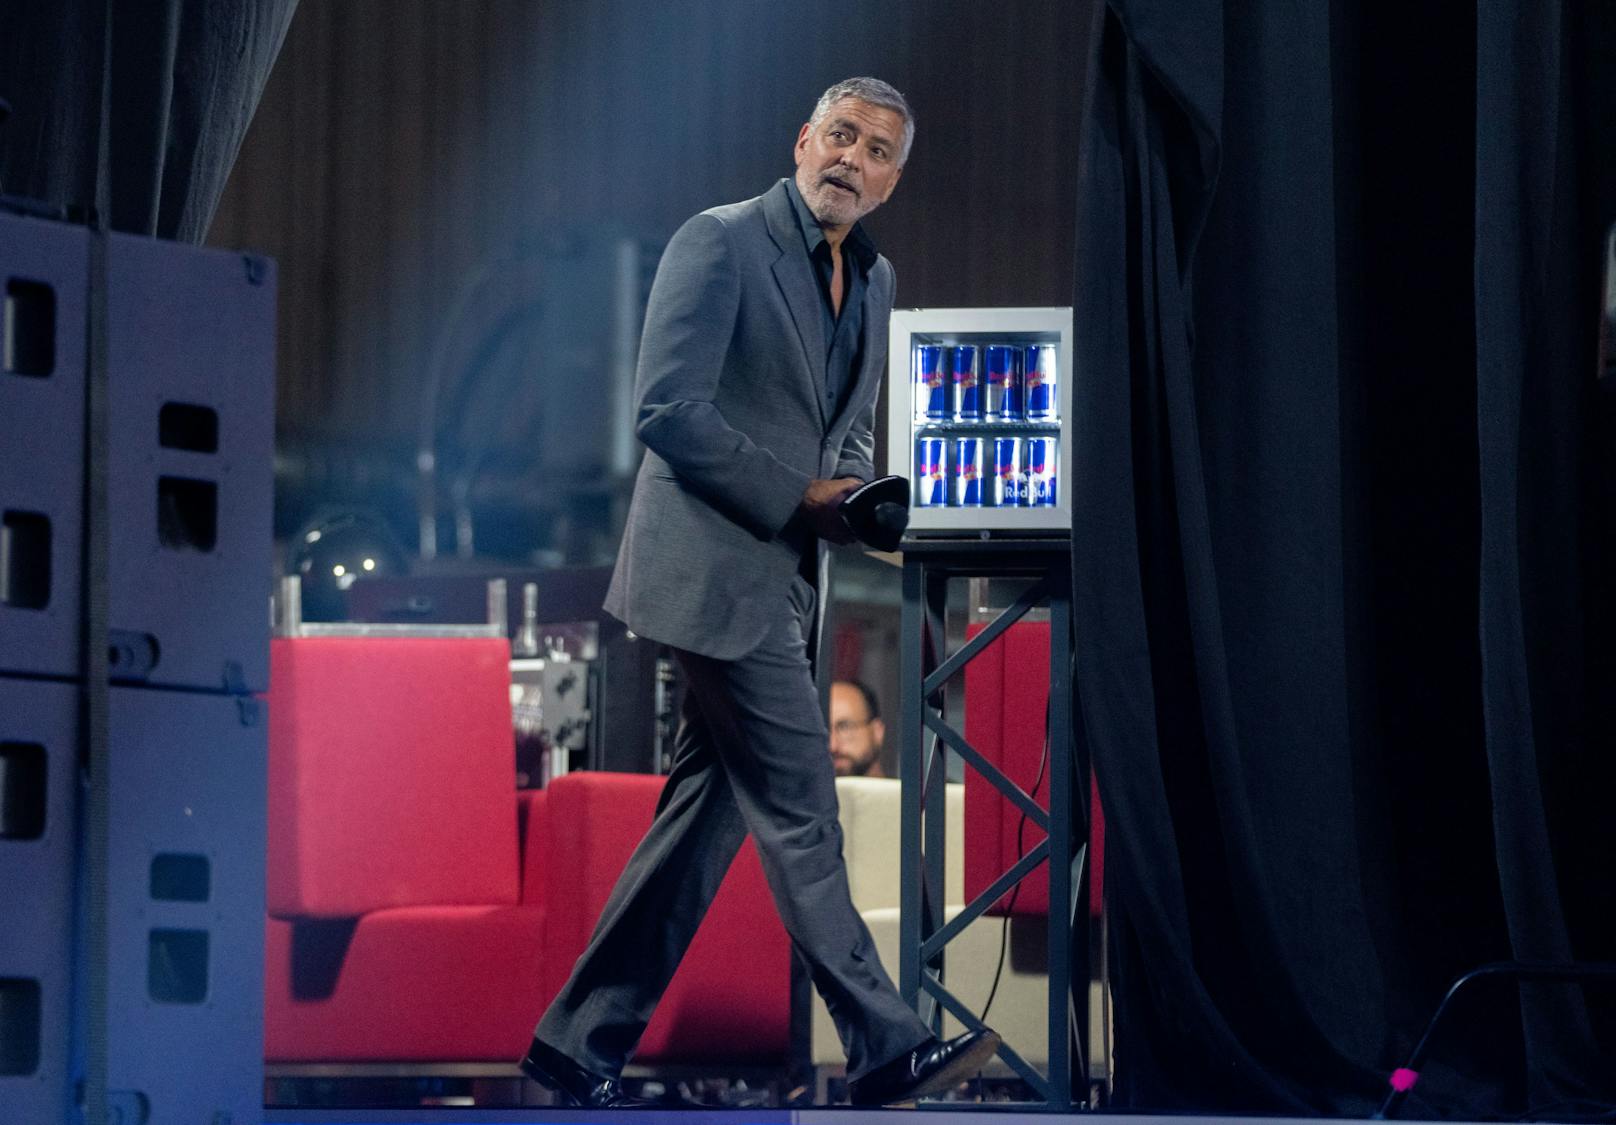 &nbsp;Schauspieler und Menschenrechtsaktivist George Clooney beim "4GAMECHANGERS Festival 2022" in Wien.&nbsp;